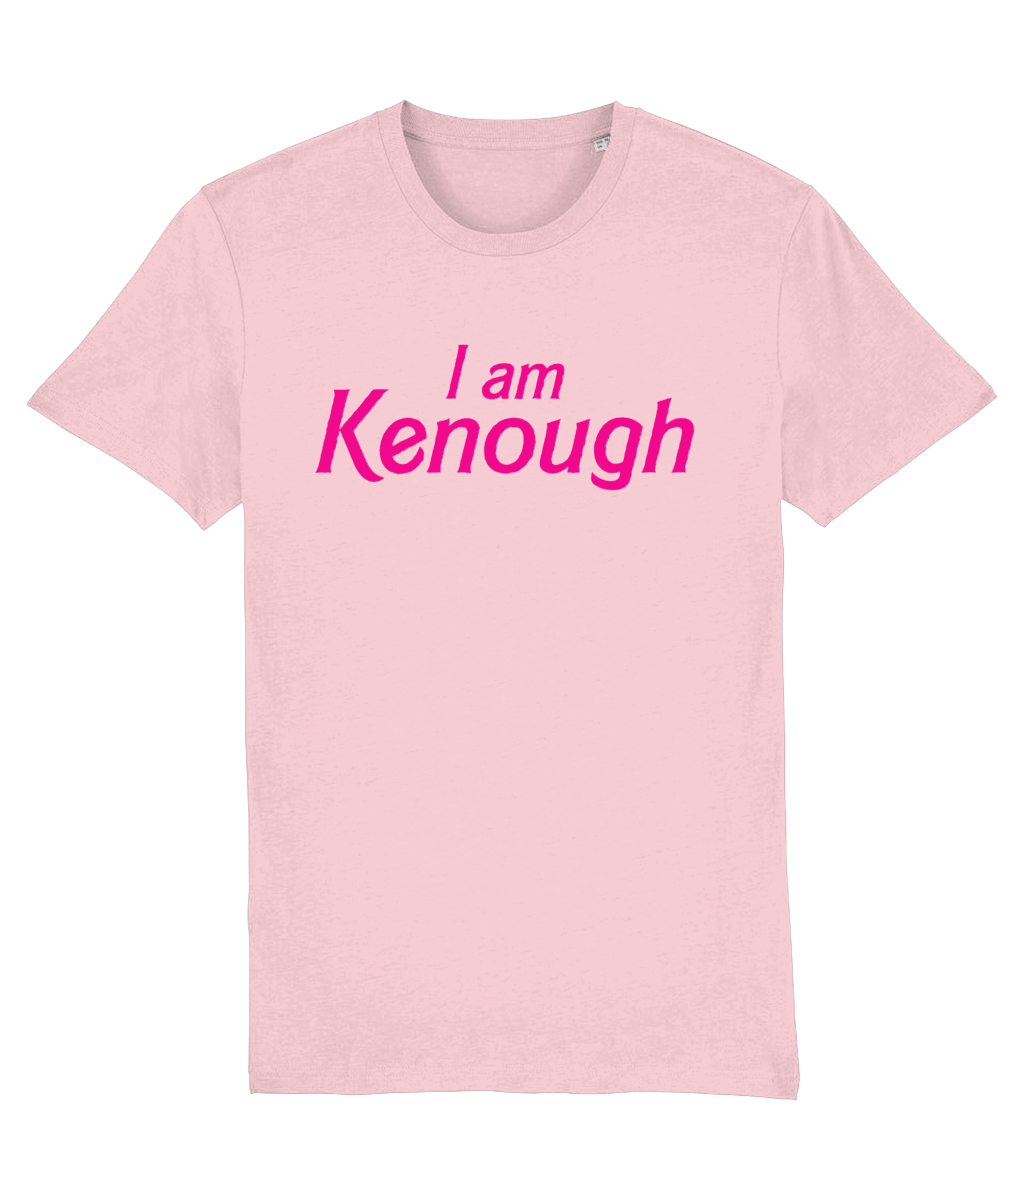 KENough Tshirt